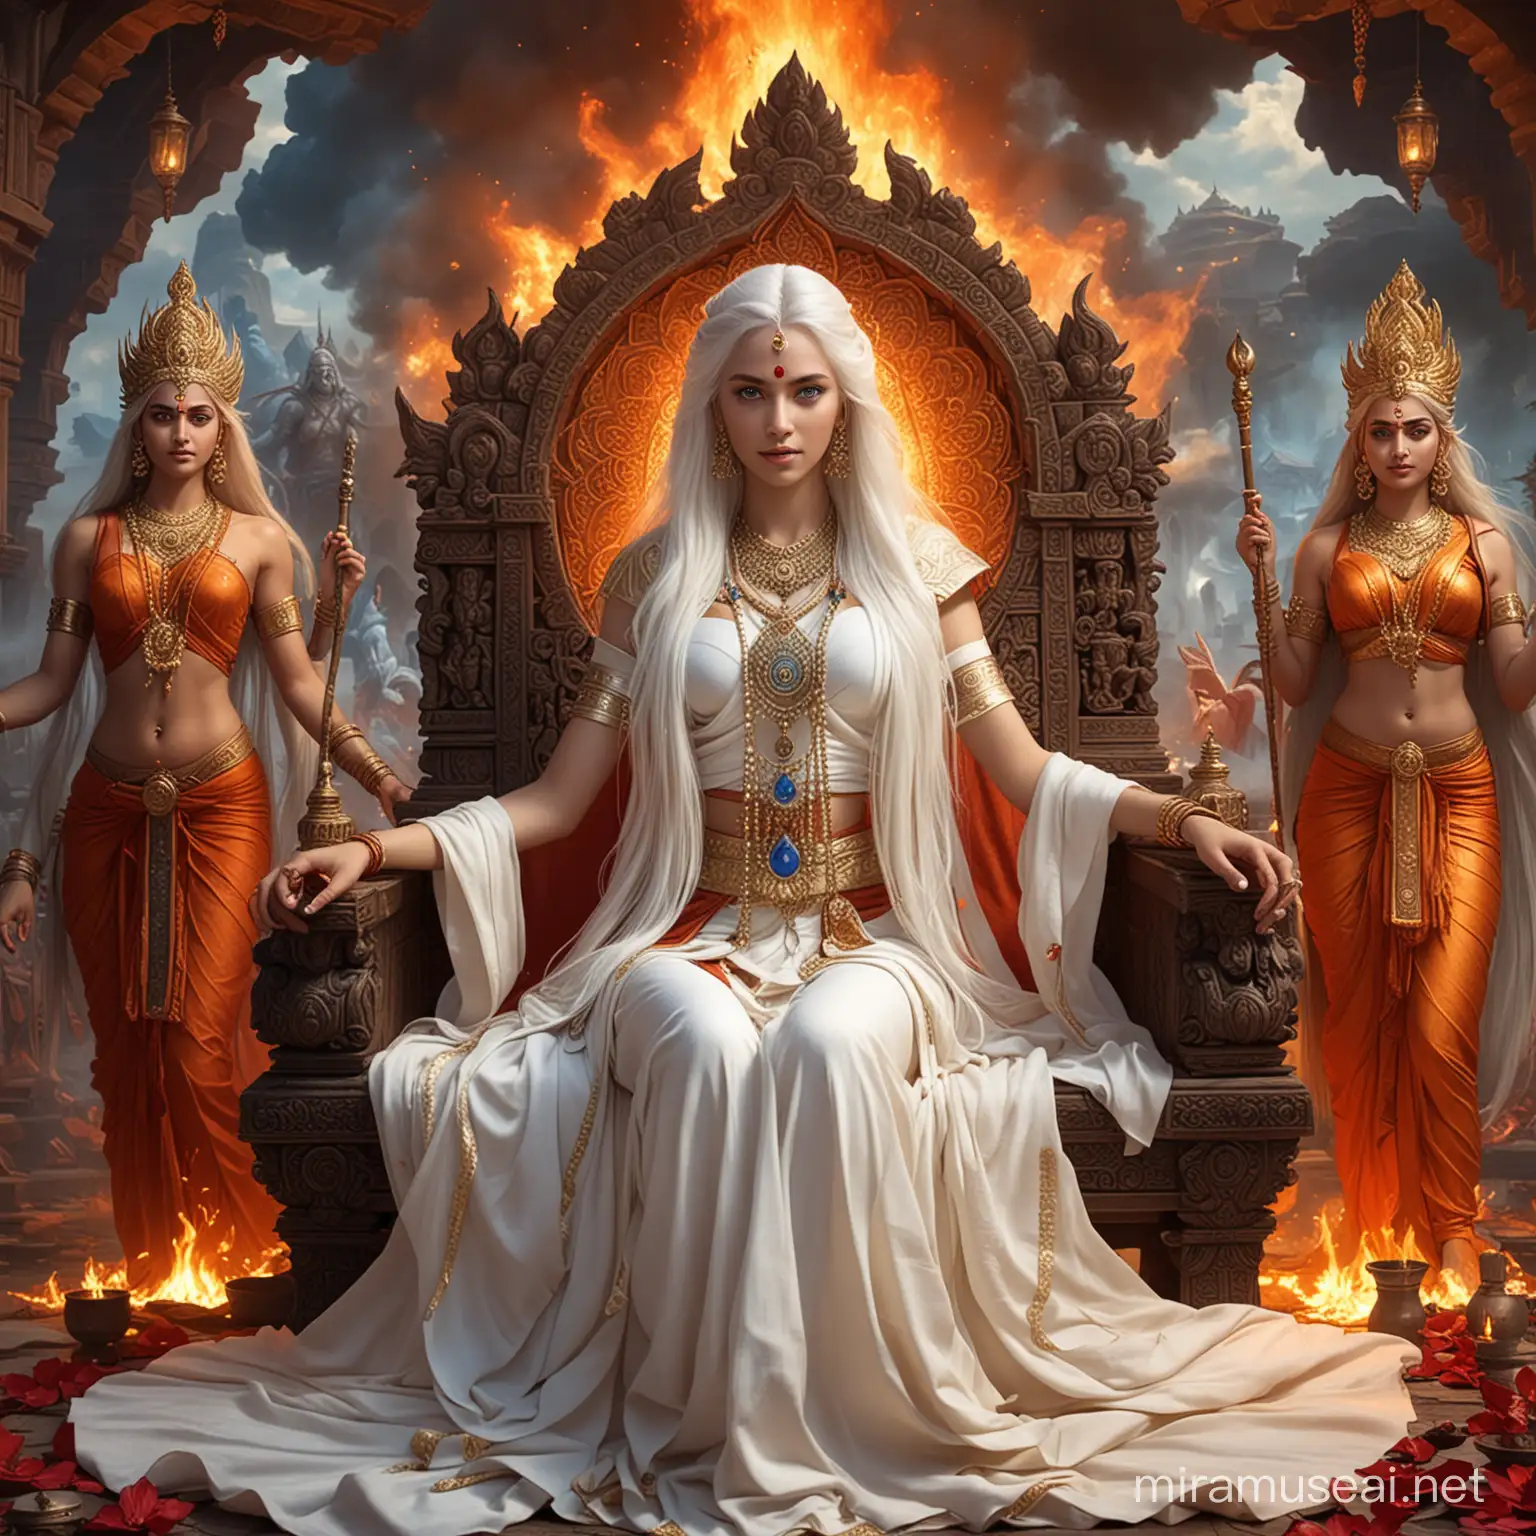 Majestic Hindu Empress in Combat Amidst Divine Presence